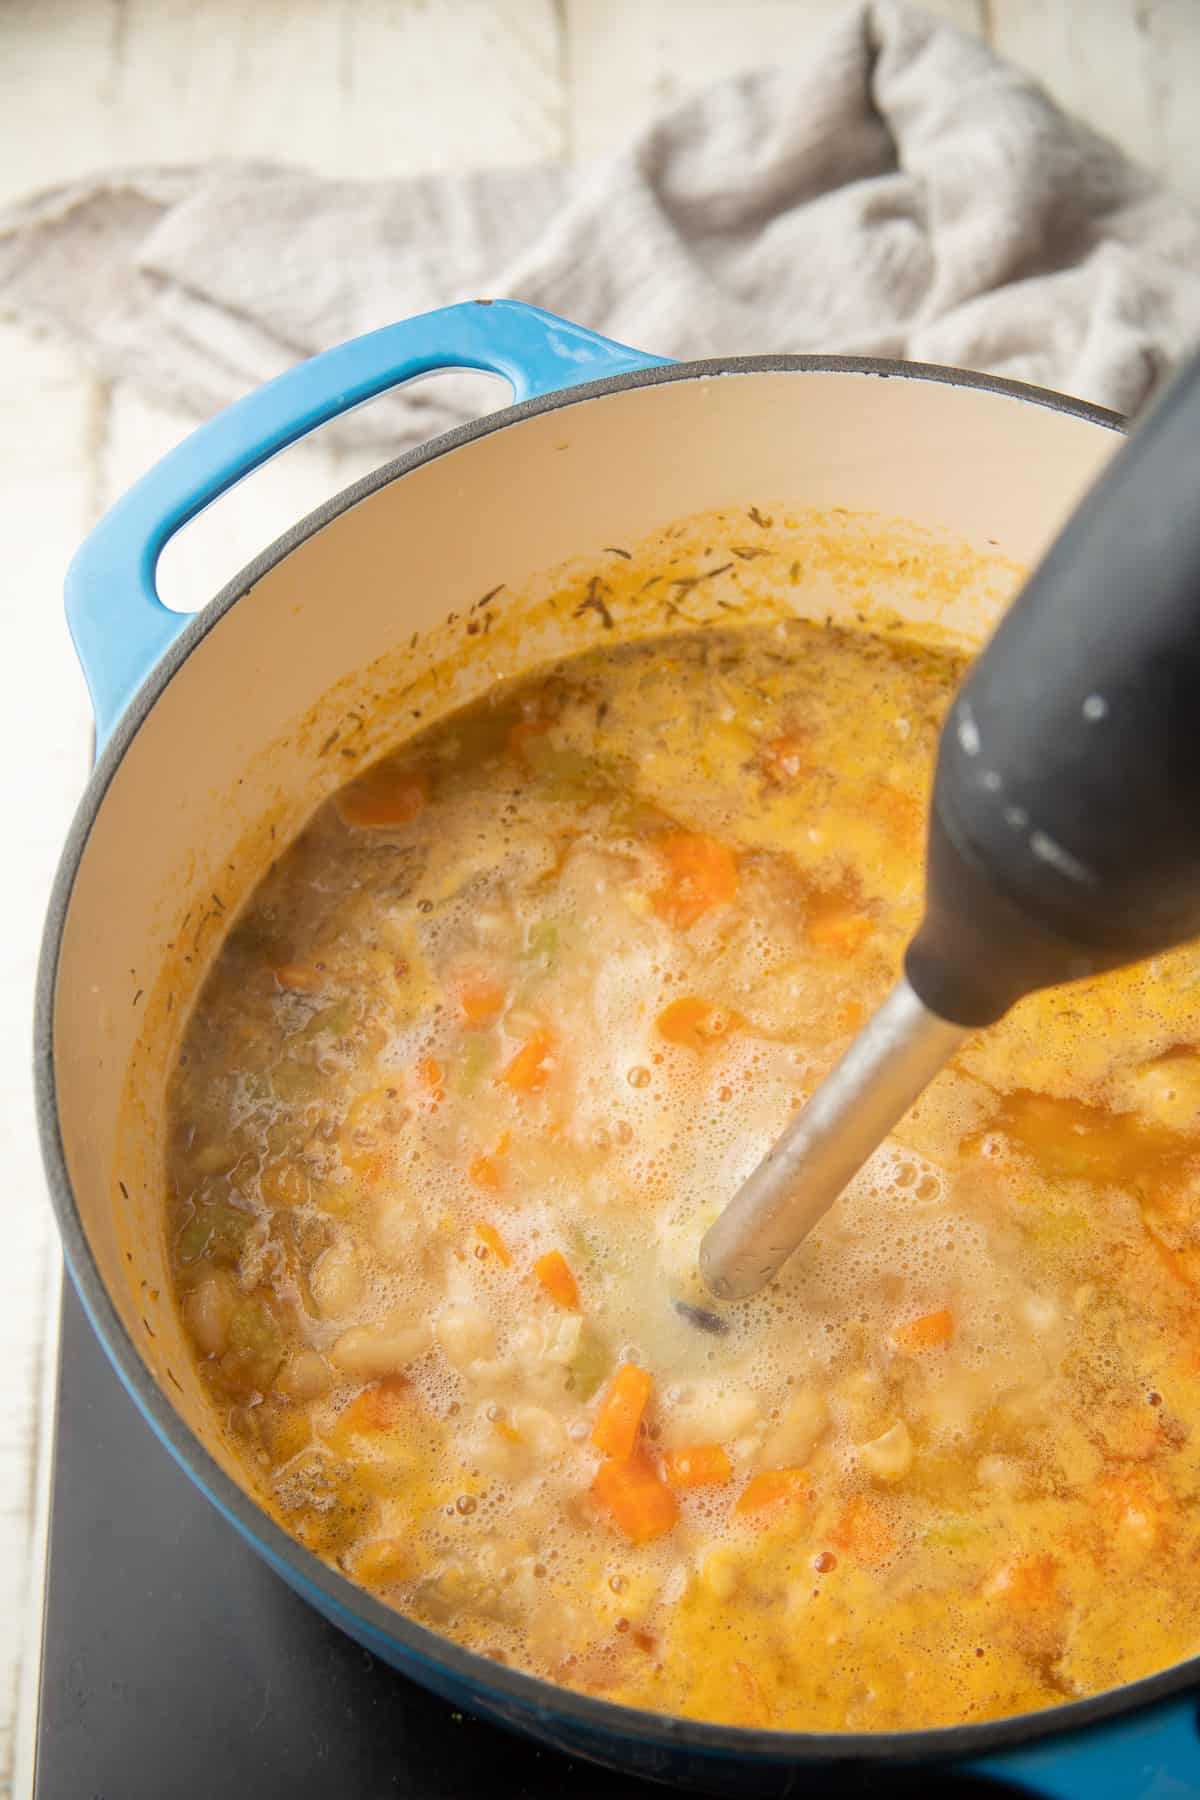 Immersion blender blending a pot of soup.